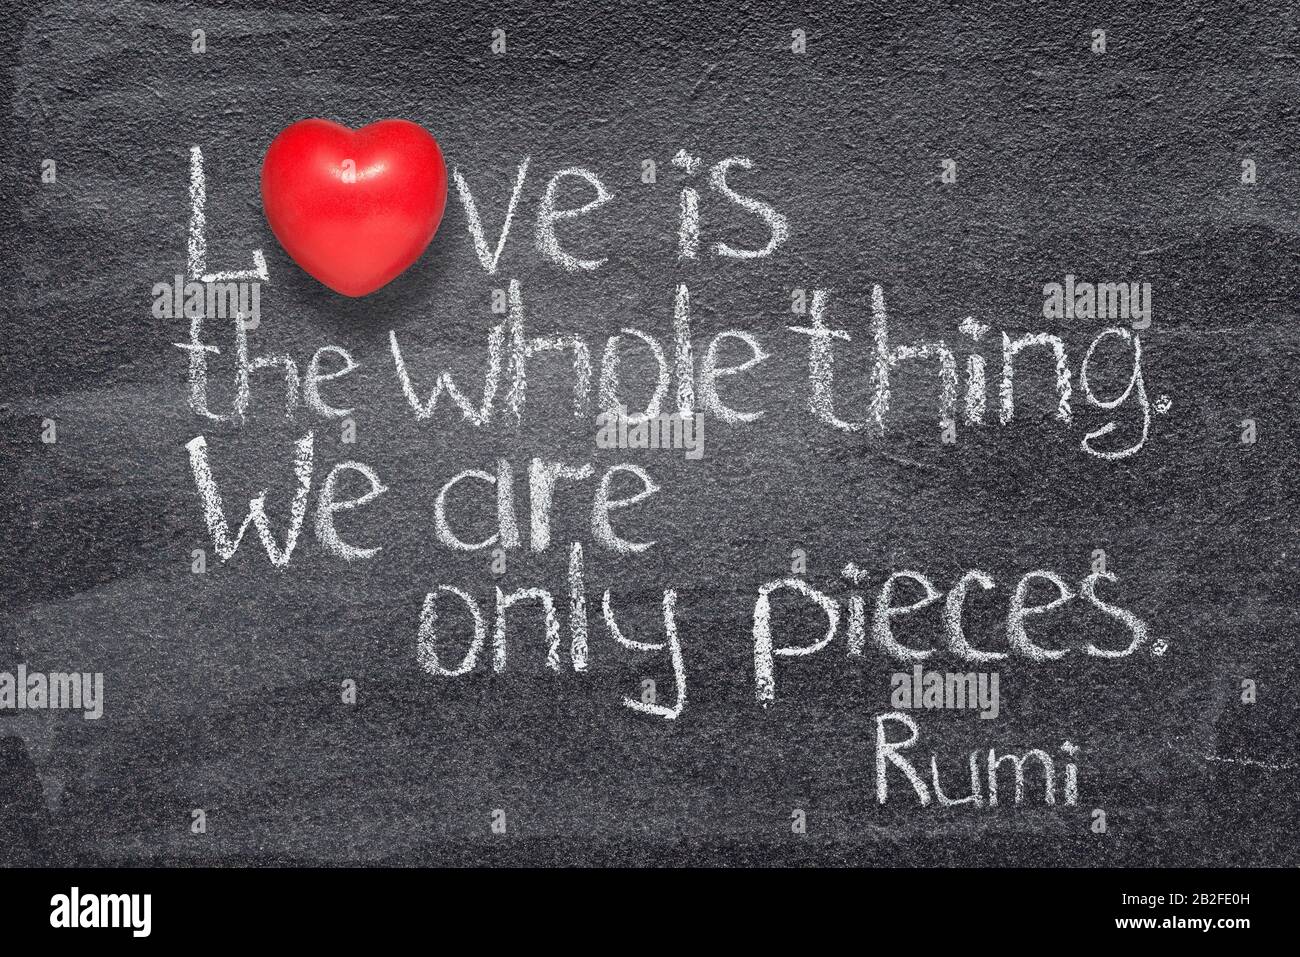 L'amore è tutta la cosa - antico poeta e filosofo persiano Rumi citazione  scritta su lavagna con il simbolo del cuore rosso invece di o Foto stock -  Alamy